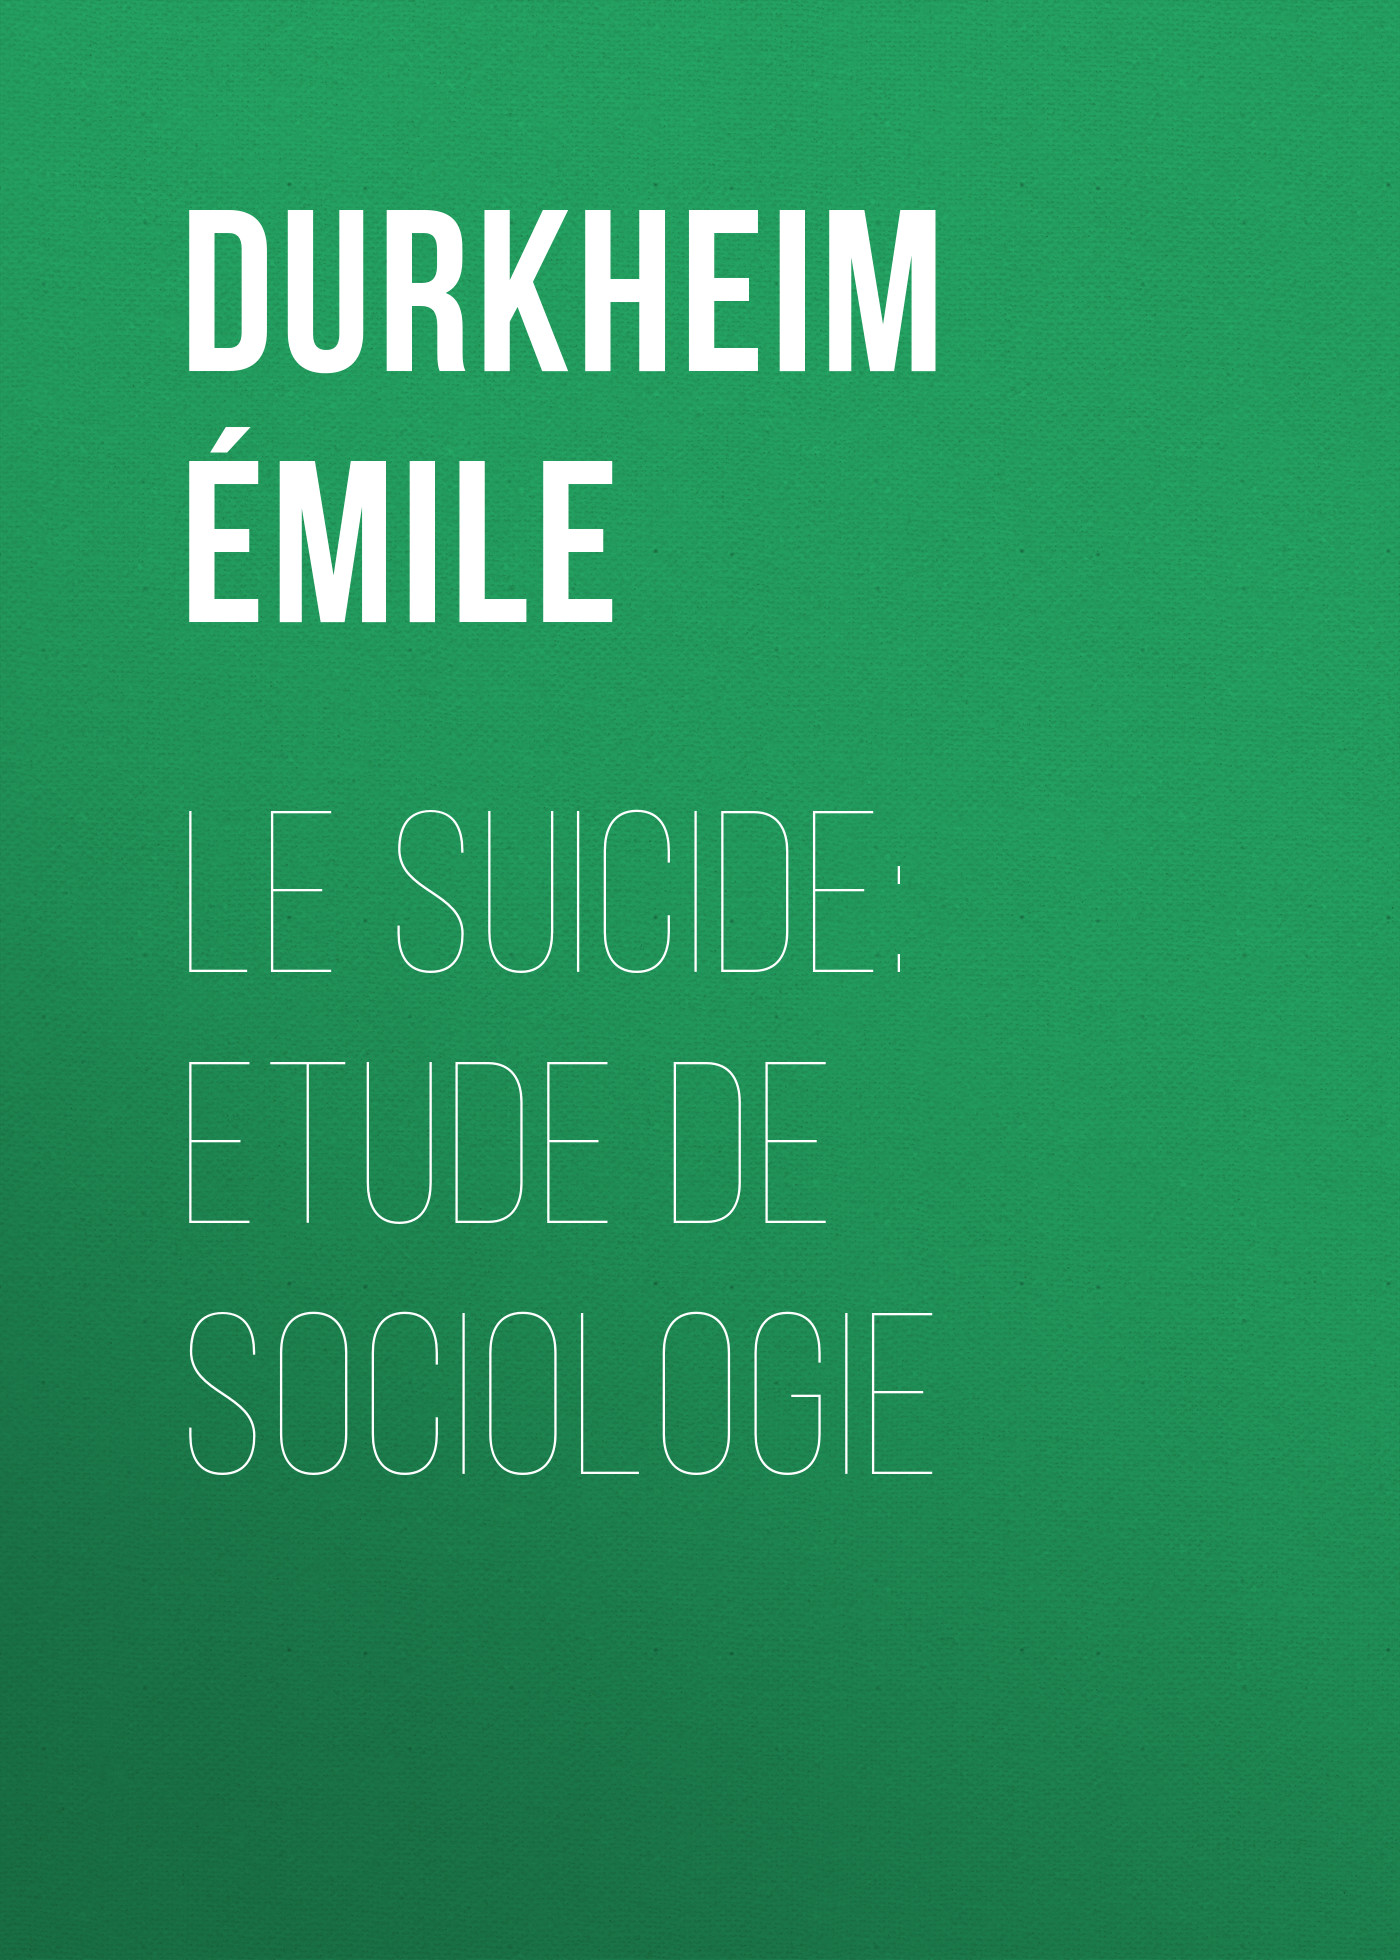 Книга Le Suicide: Etude de Sociologie из серии , созданная Émile Durkheim, может относится к жанру Зарубежная старинная литература, Зарубежная классика. Стоимость электронной книги Le Suicide: Etude de Sociologie с идентификатором 24621533 составляет 0 руб.